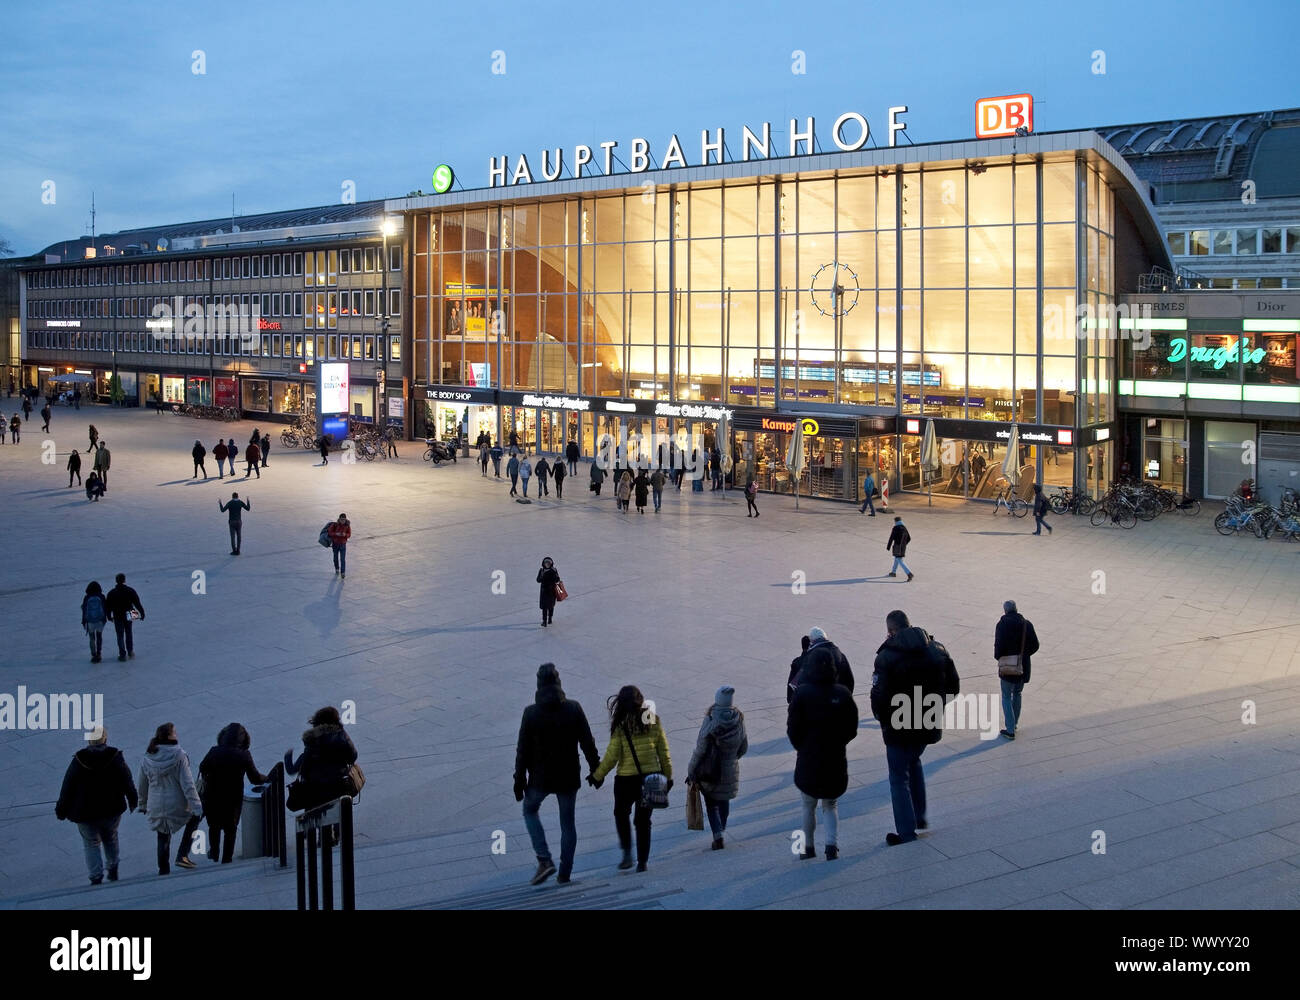 Bahnhofsvorplatz mit Hauptbahnhof bei Dämmerung, Köln, Rheinland, Nordrhein-Westfalen, Deutschland, Eu Stockfoto